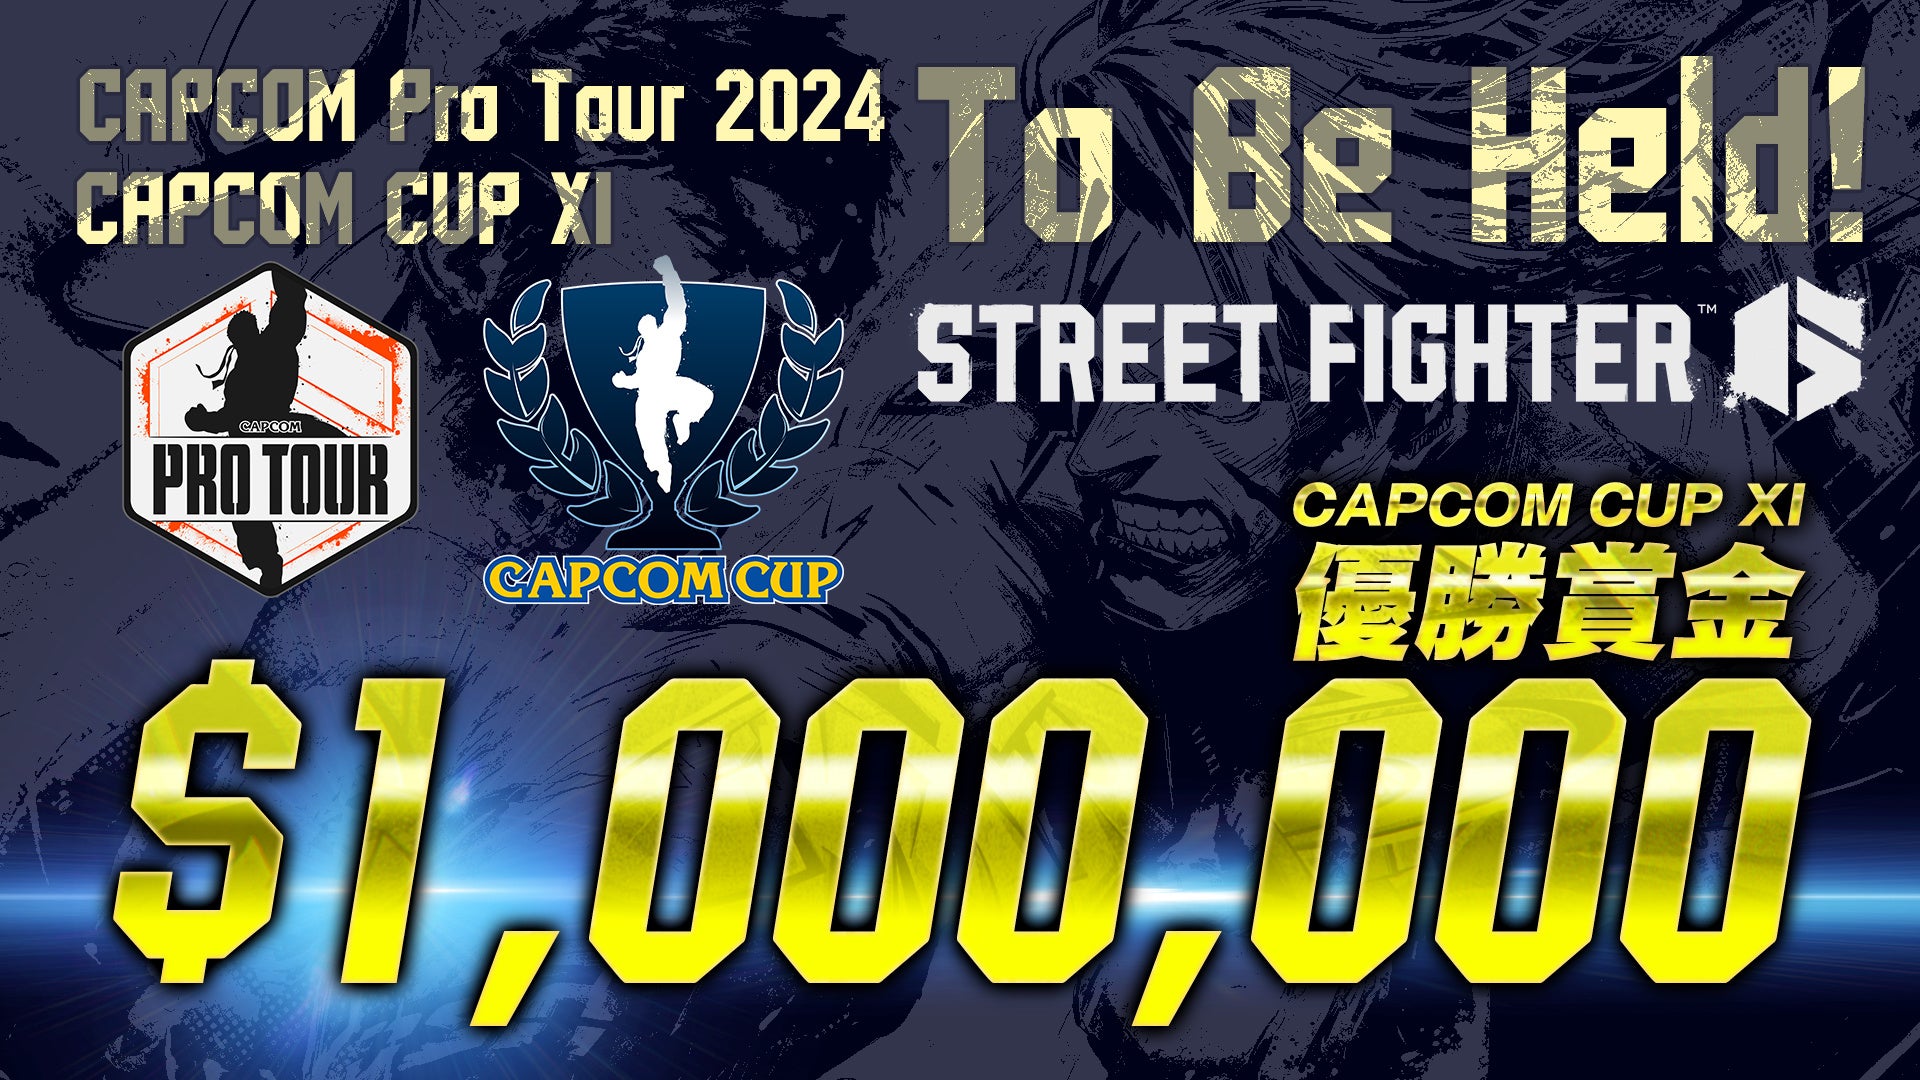 CAPCOM CUP X 優勝賞金100万ドルはUMA選手が獲得！　来シーズンのCAPCOM CUP XIも優勝賞金100万ドルに決定！